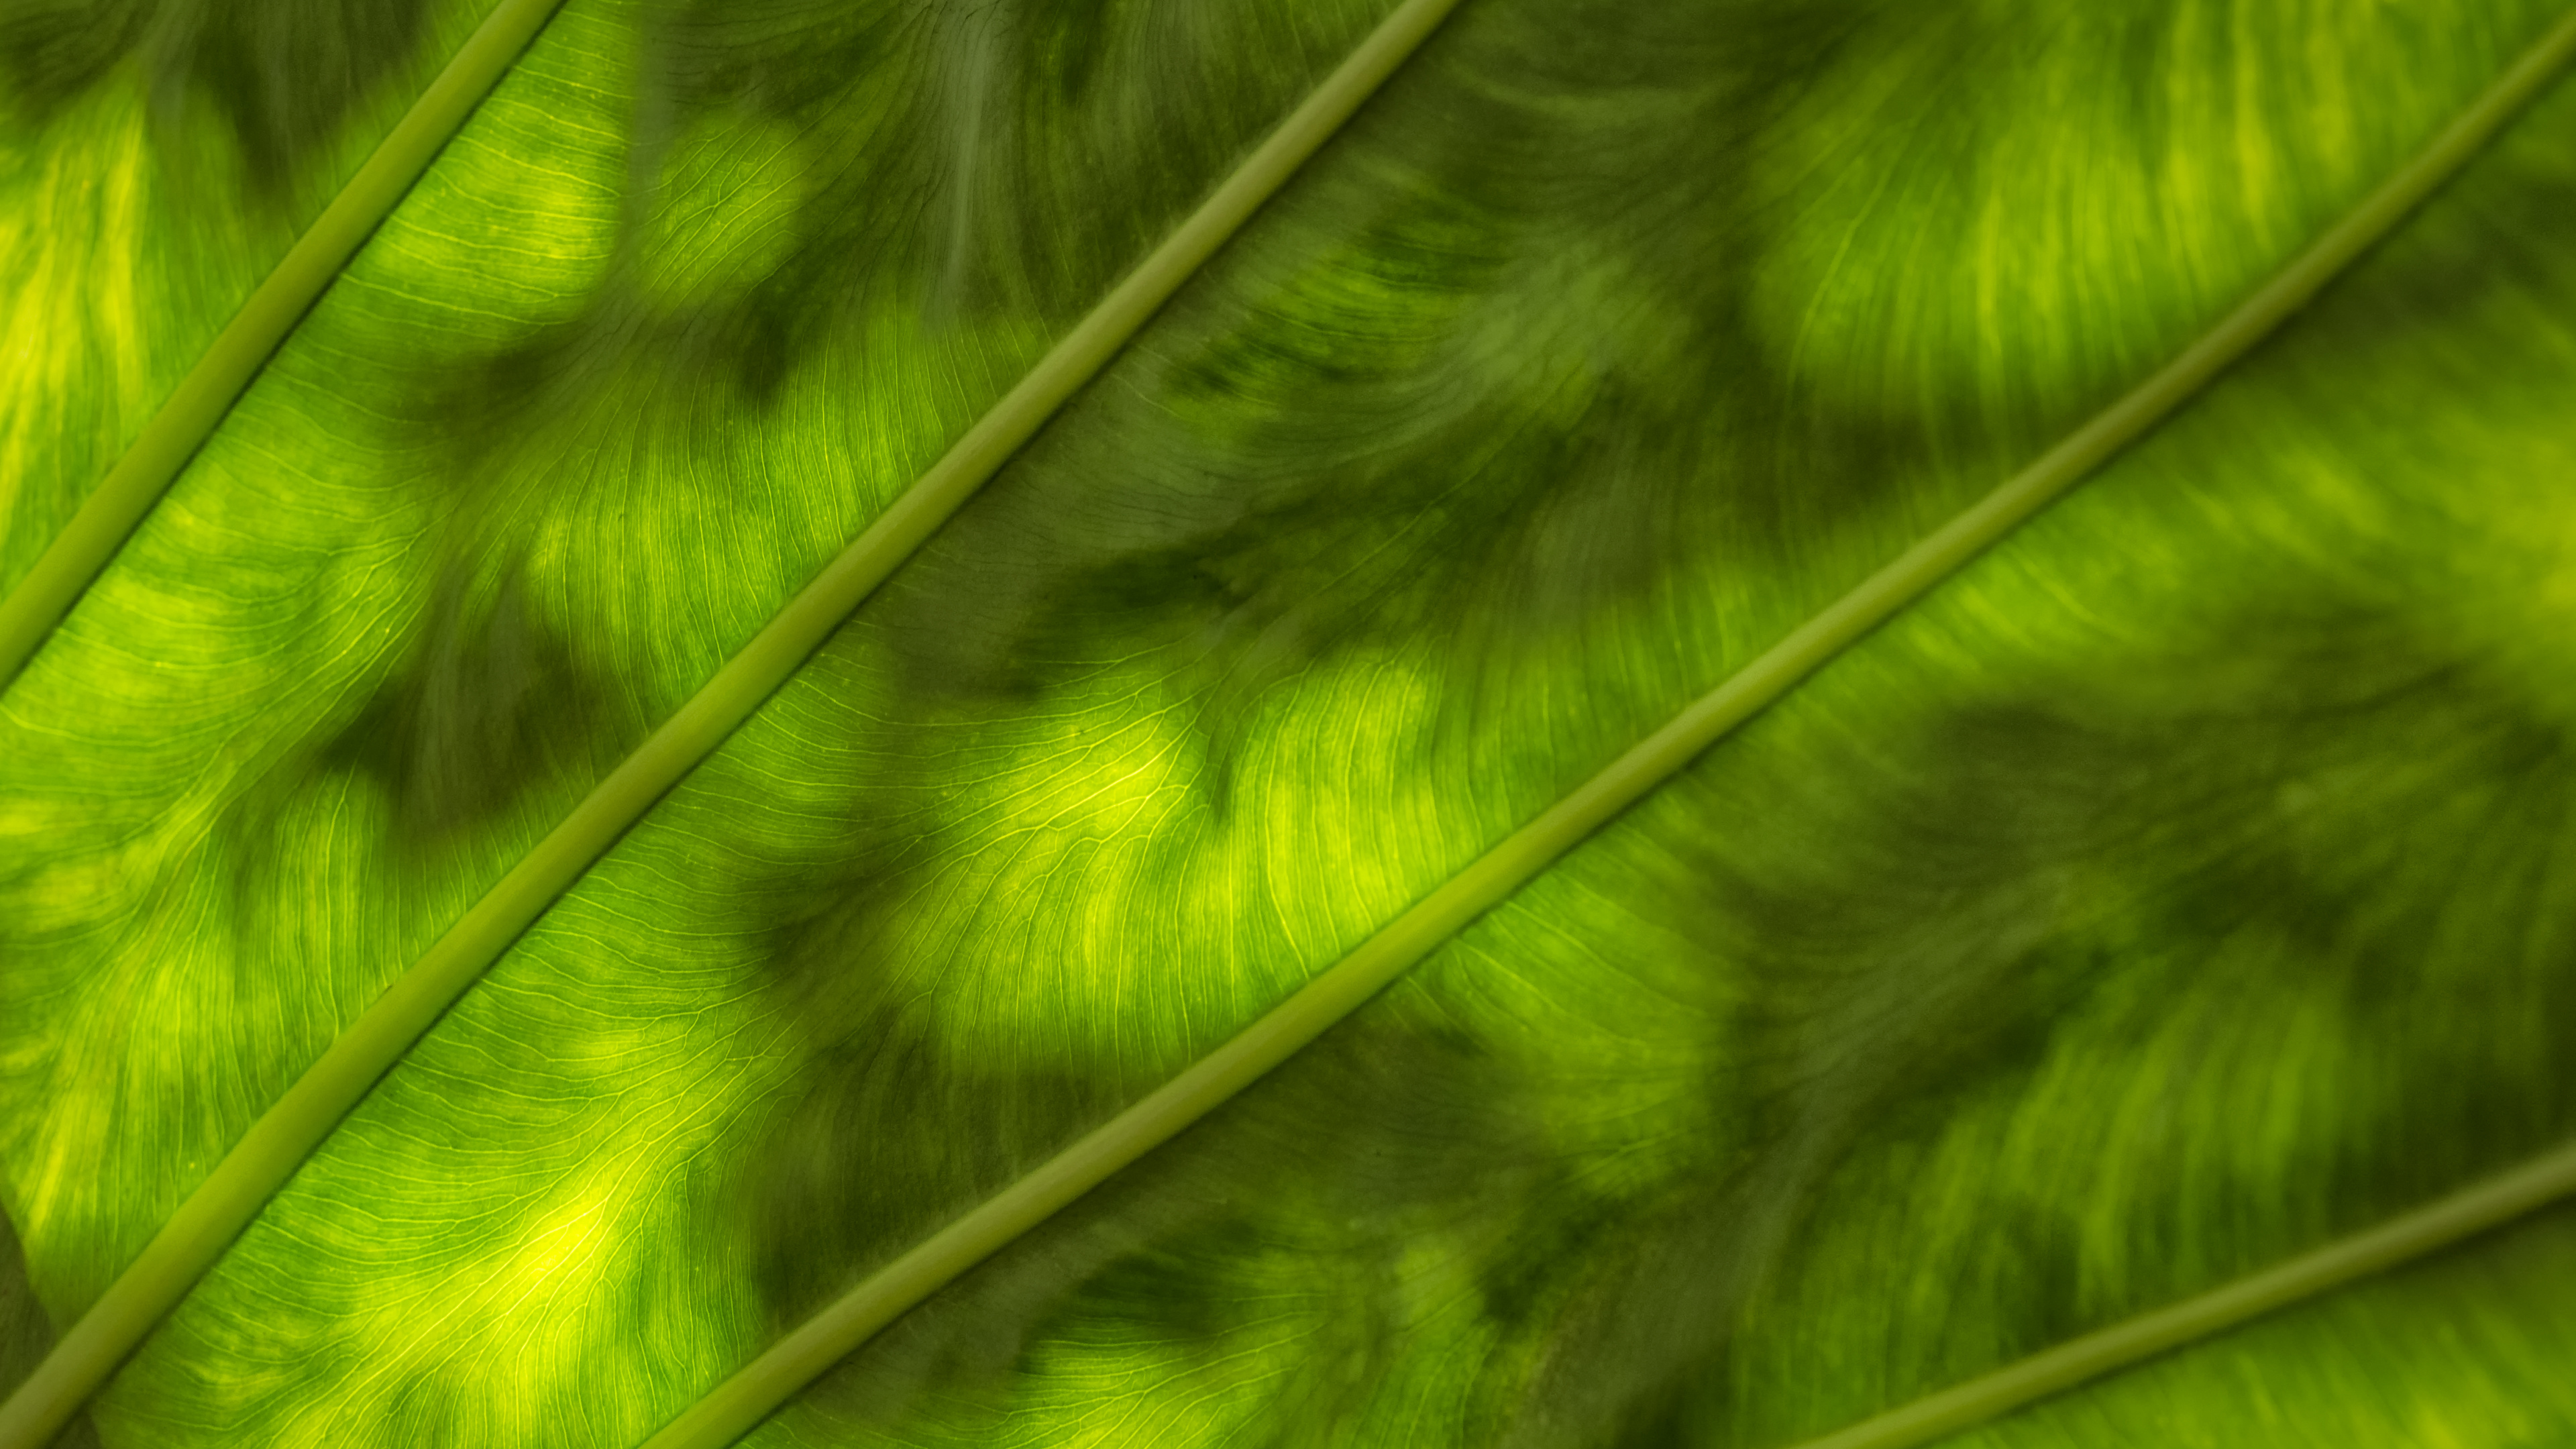 Textil de Rayas Verdes y Blancas. Wallpaper in 3840x2160 Resolution